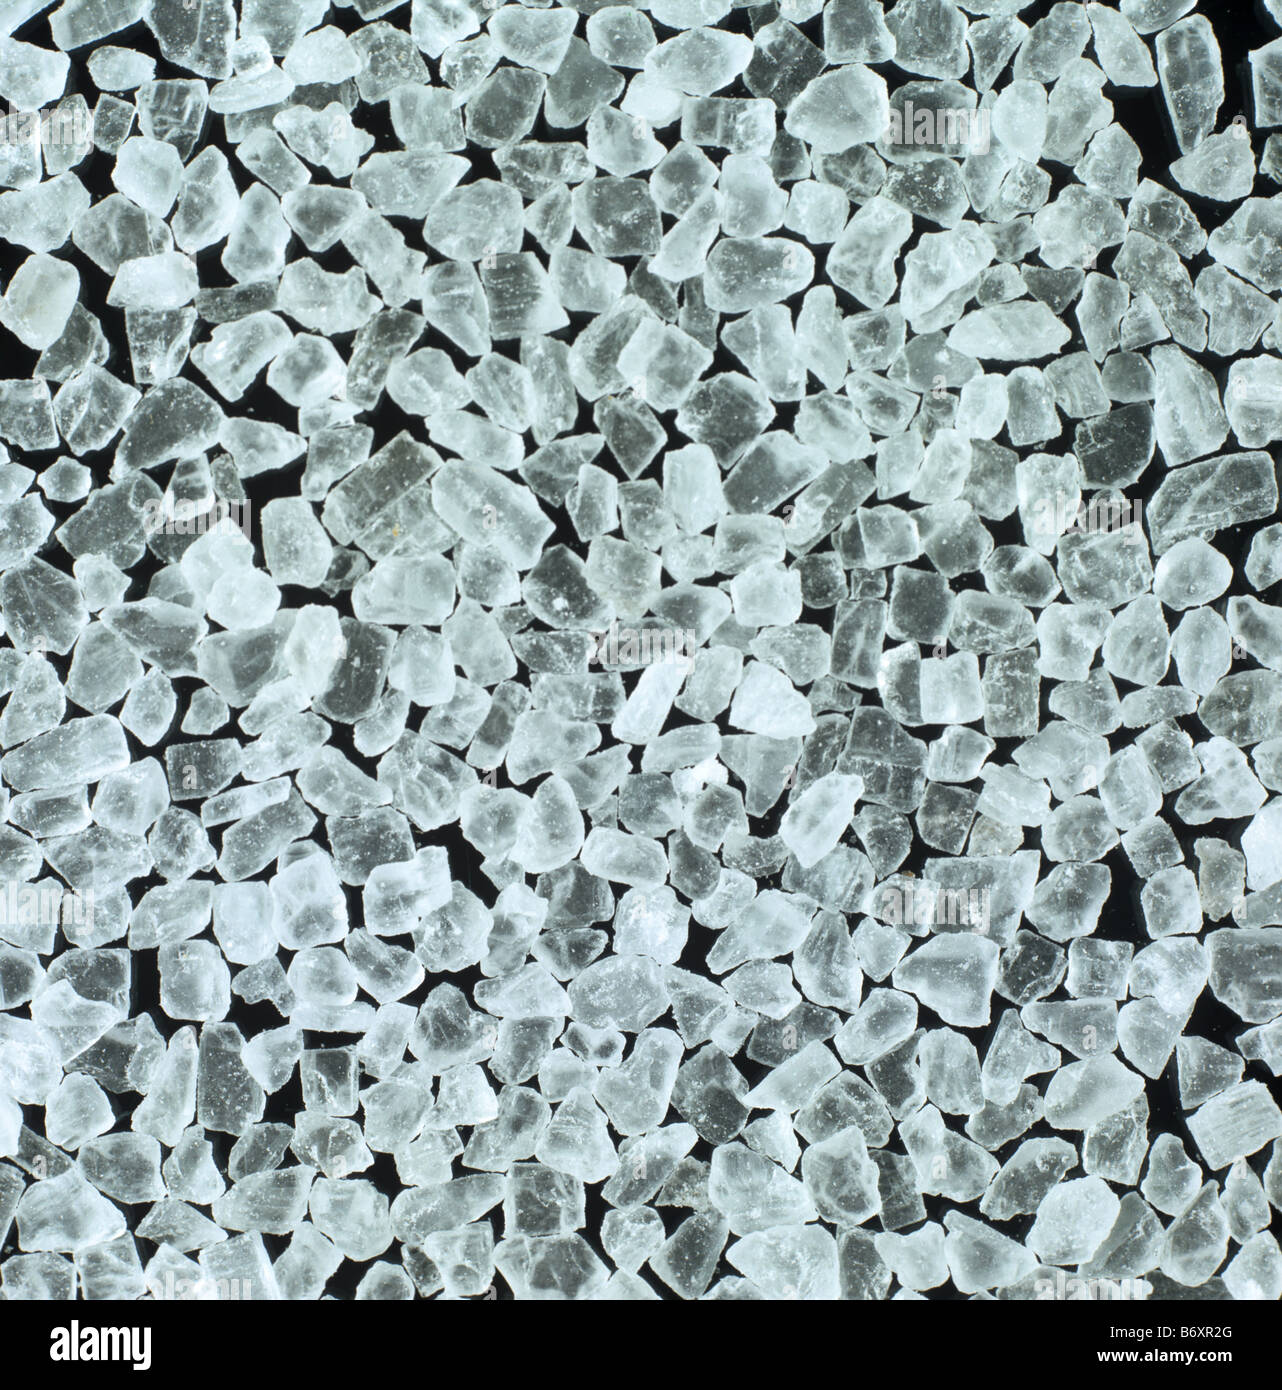 Steinsalz-Kristalle wie gekauft für Küche Verwendung und Zubereitung von Speisen Stockfoto